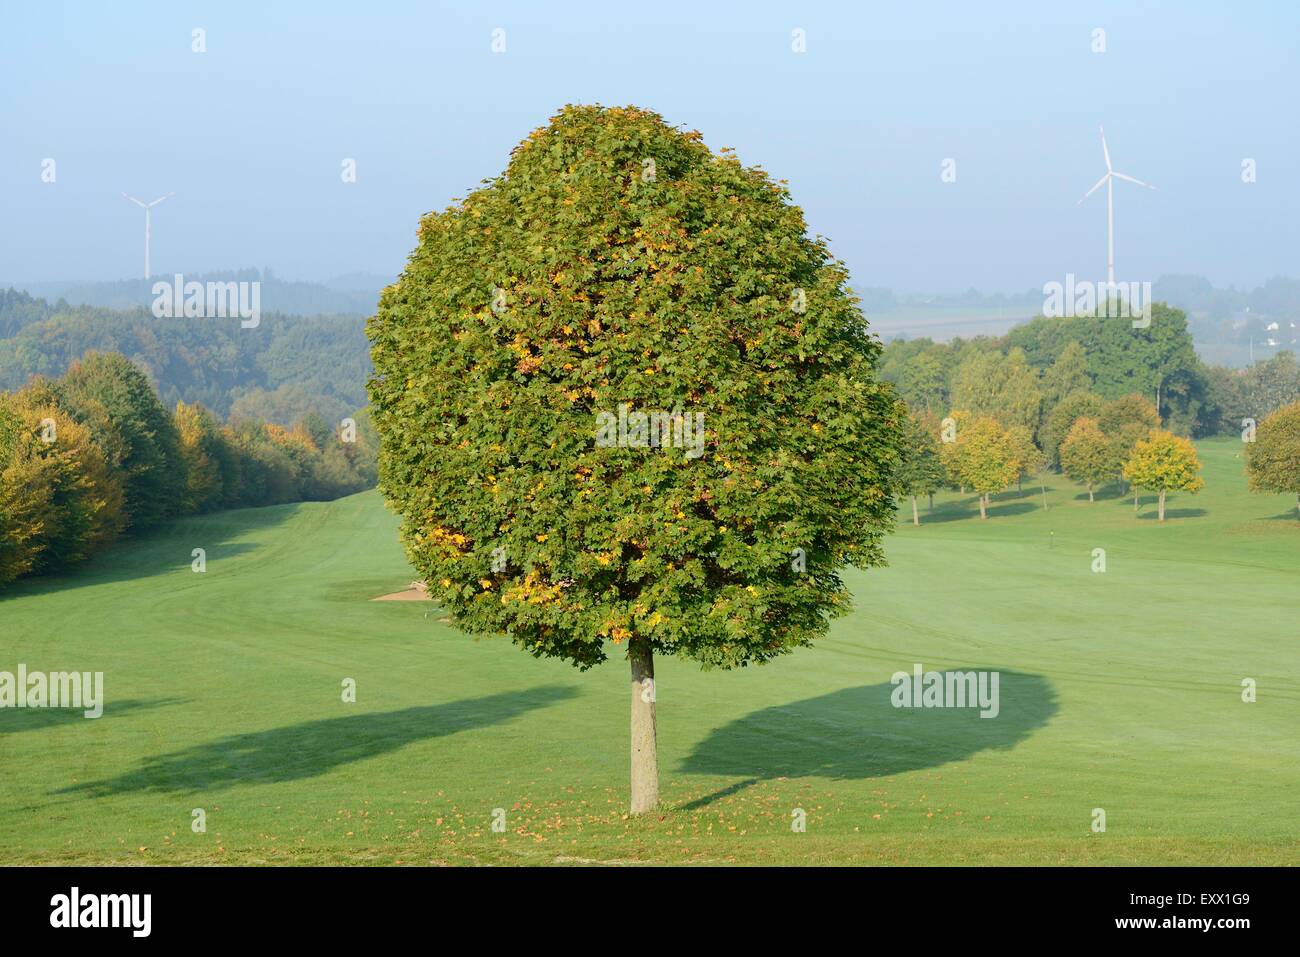 Norway maple, Acer platanoides, Upper Palatinate, Bavaria, Germany, Europe Stock Photo